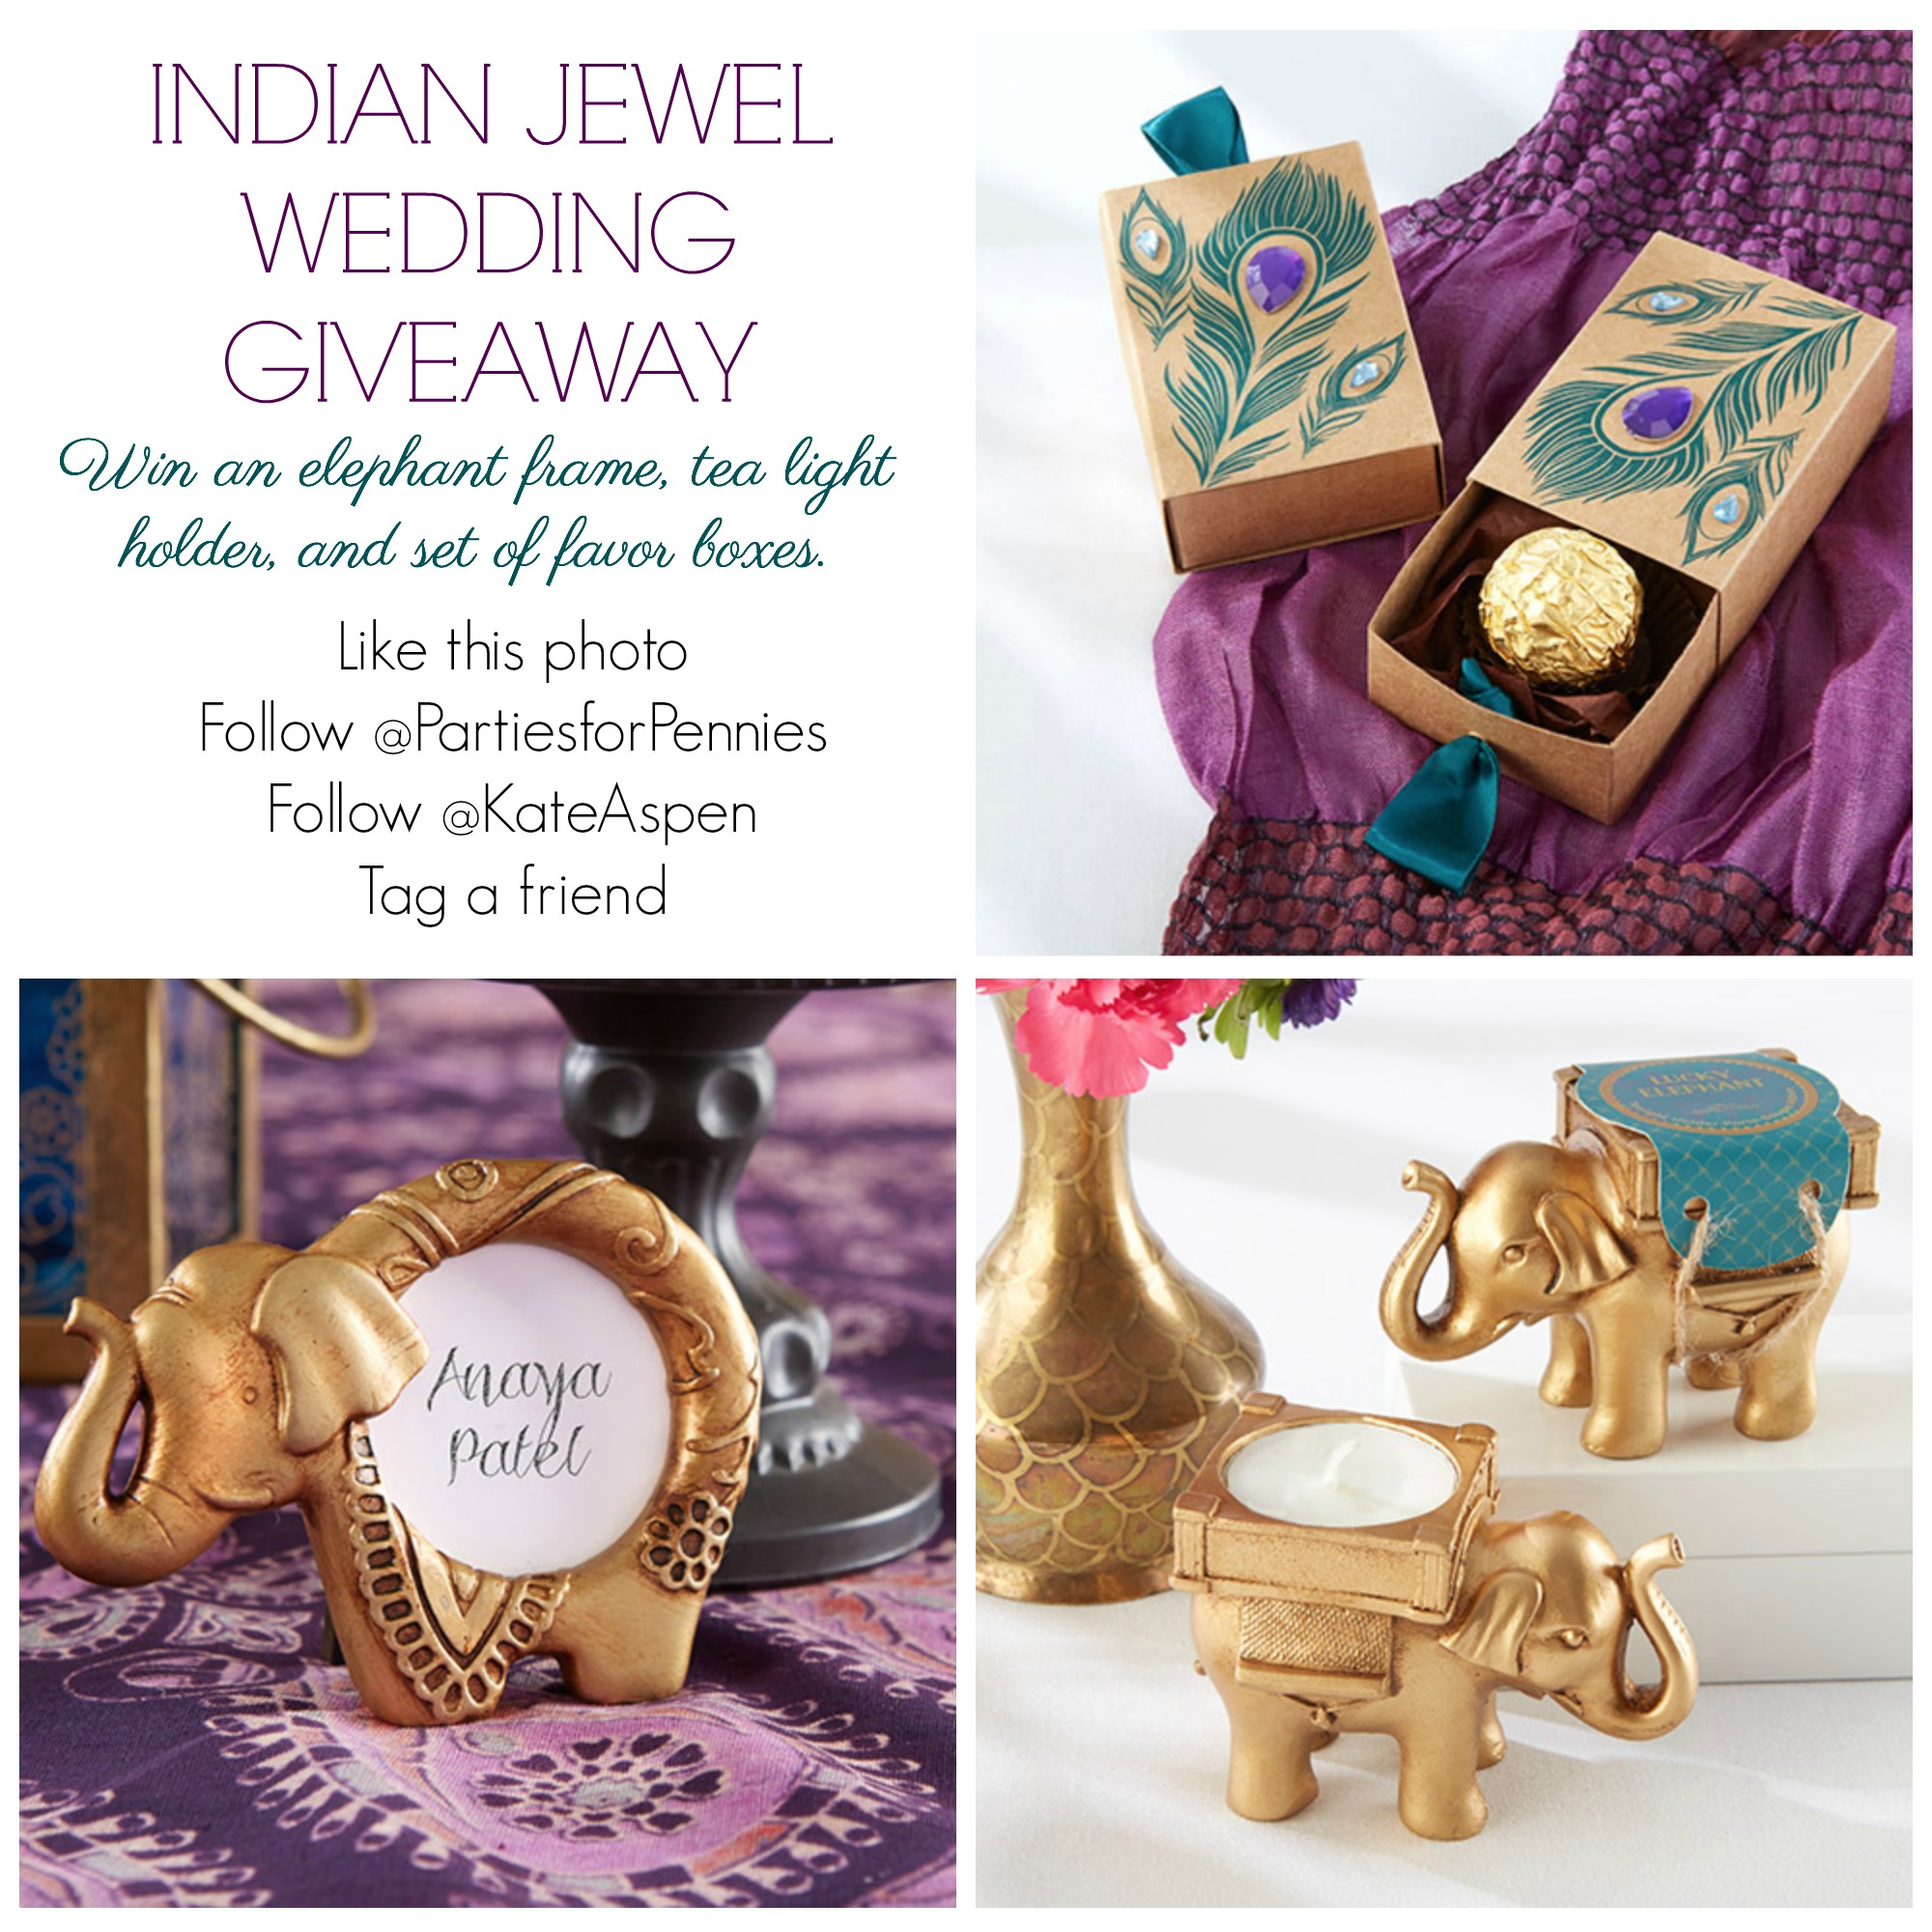 Indian Wedding Instagram Giveaway Info